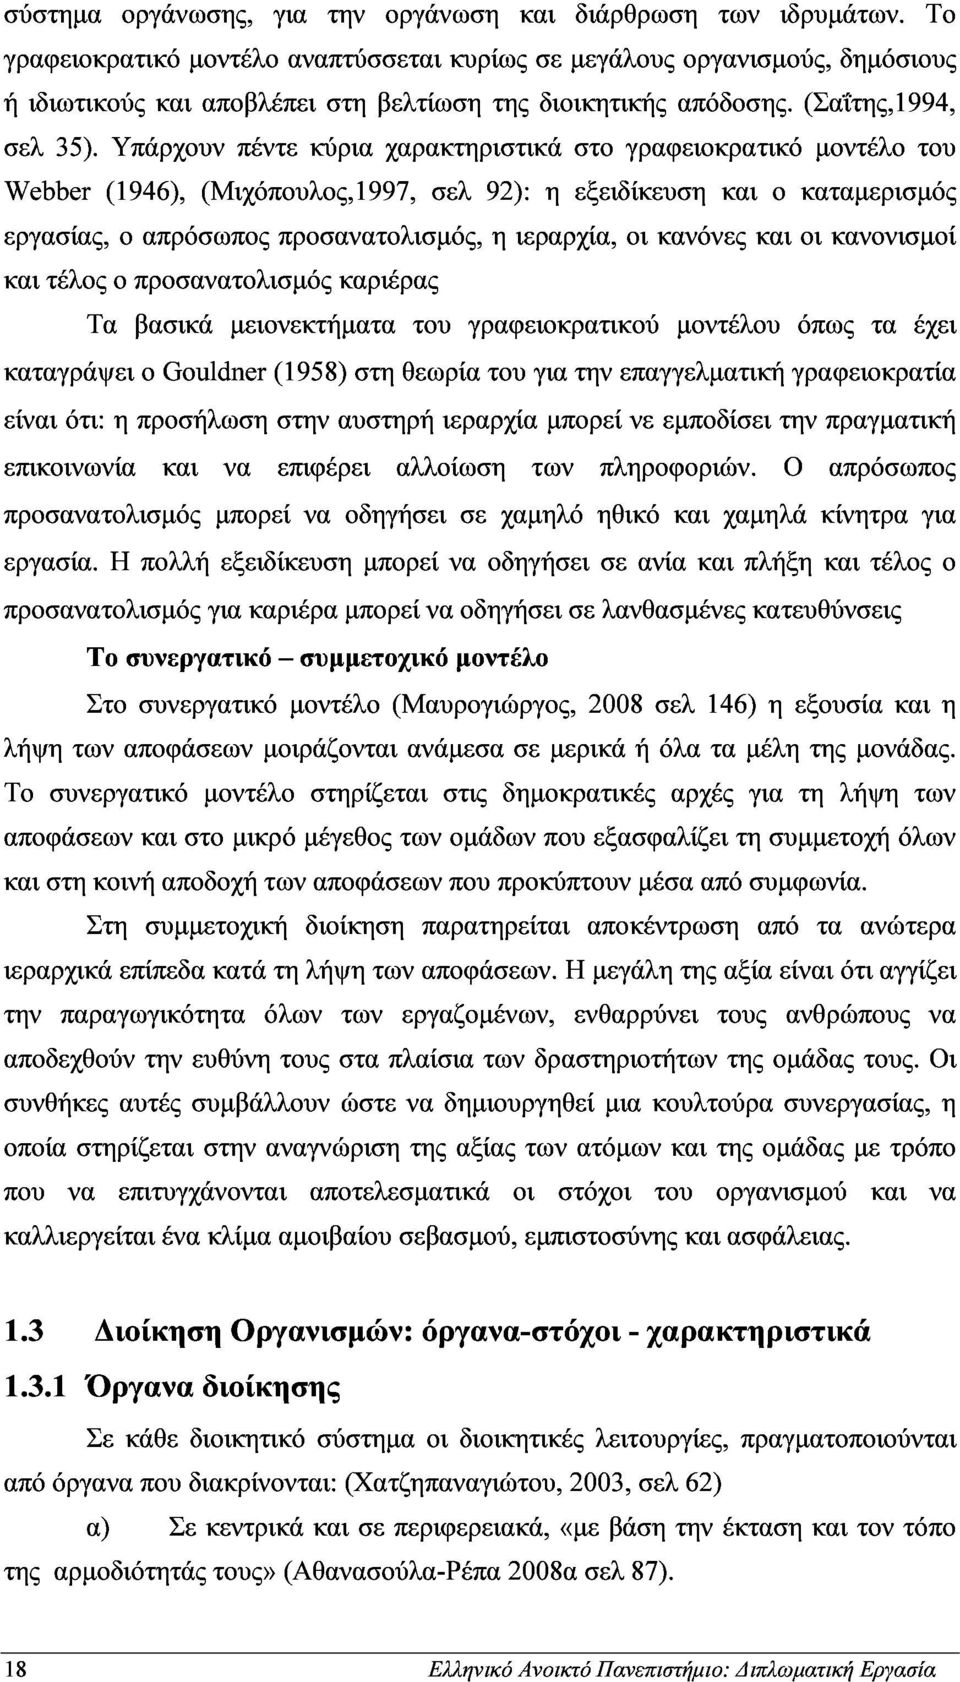 Υπάρχουν πέντε κύρια χαρακτηριστικά στο γραφειοκρατικό µοντέλο του και (1946), απρόσωπος (Μιχόπουλος,1997, προσανατολισµός, σελ 92): η ιεραρχία, η εξειδίκευση οι κανόνες και και ο οι καταµερισµός